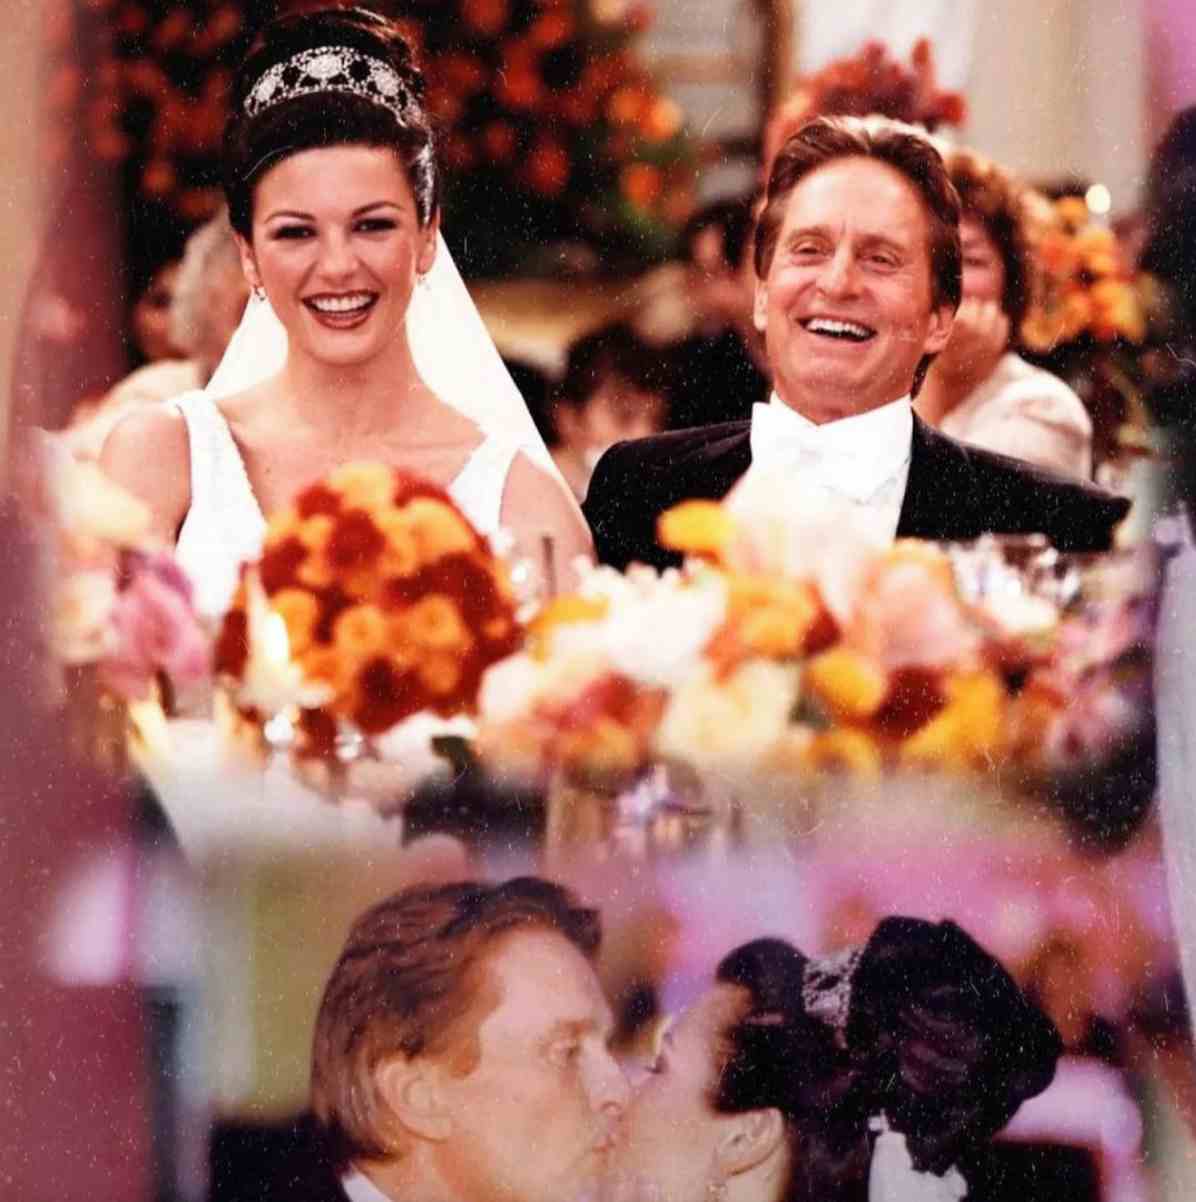 Catherine Zeta-Jones and Dylan Douglas wedding